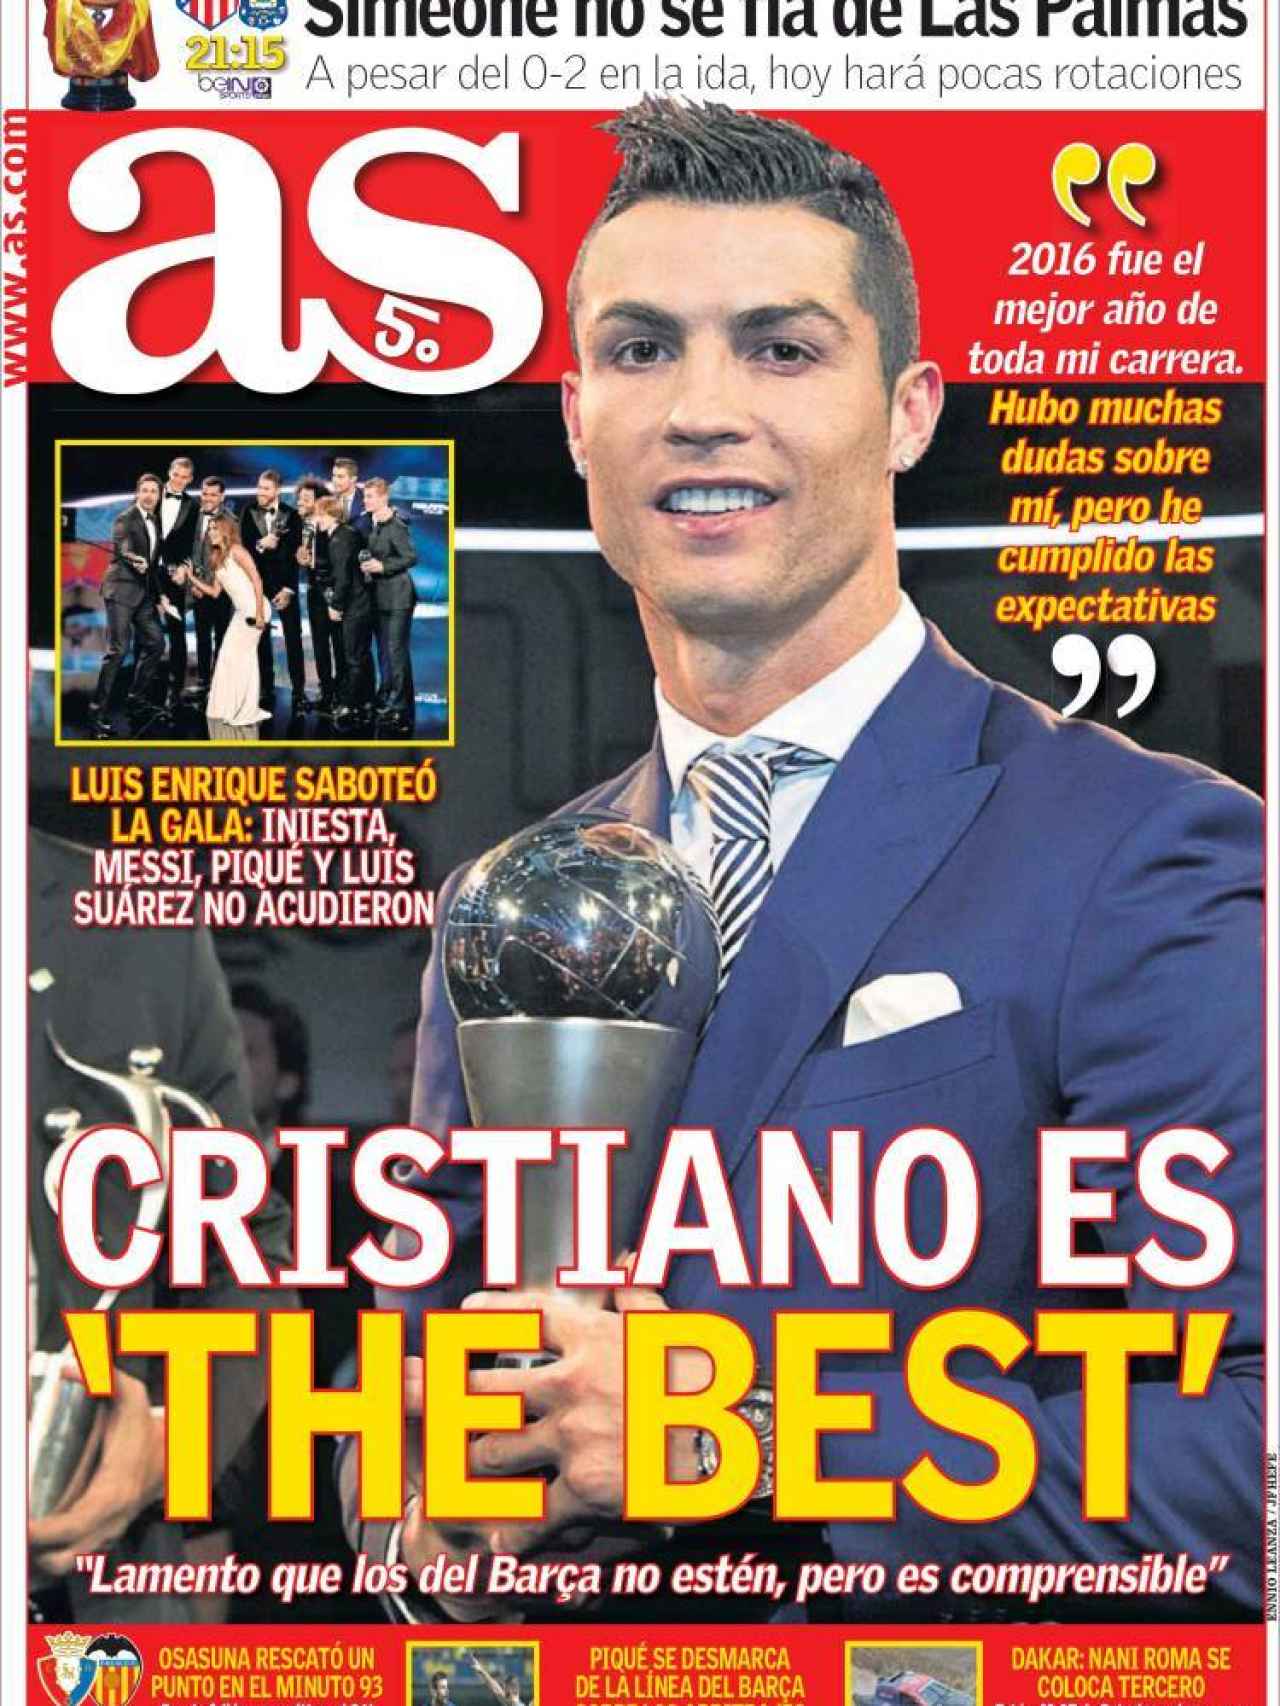 AS destaca el premio The Best que recibió Cristiano Ronaldo este lunes.